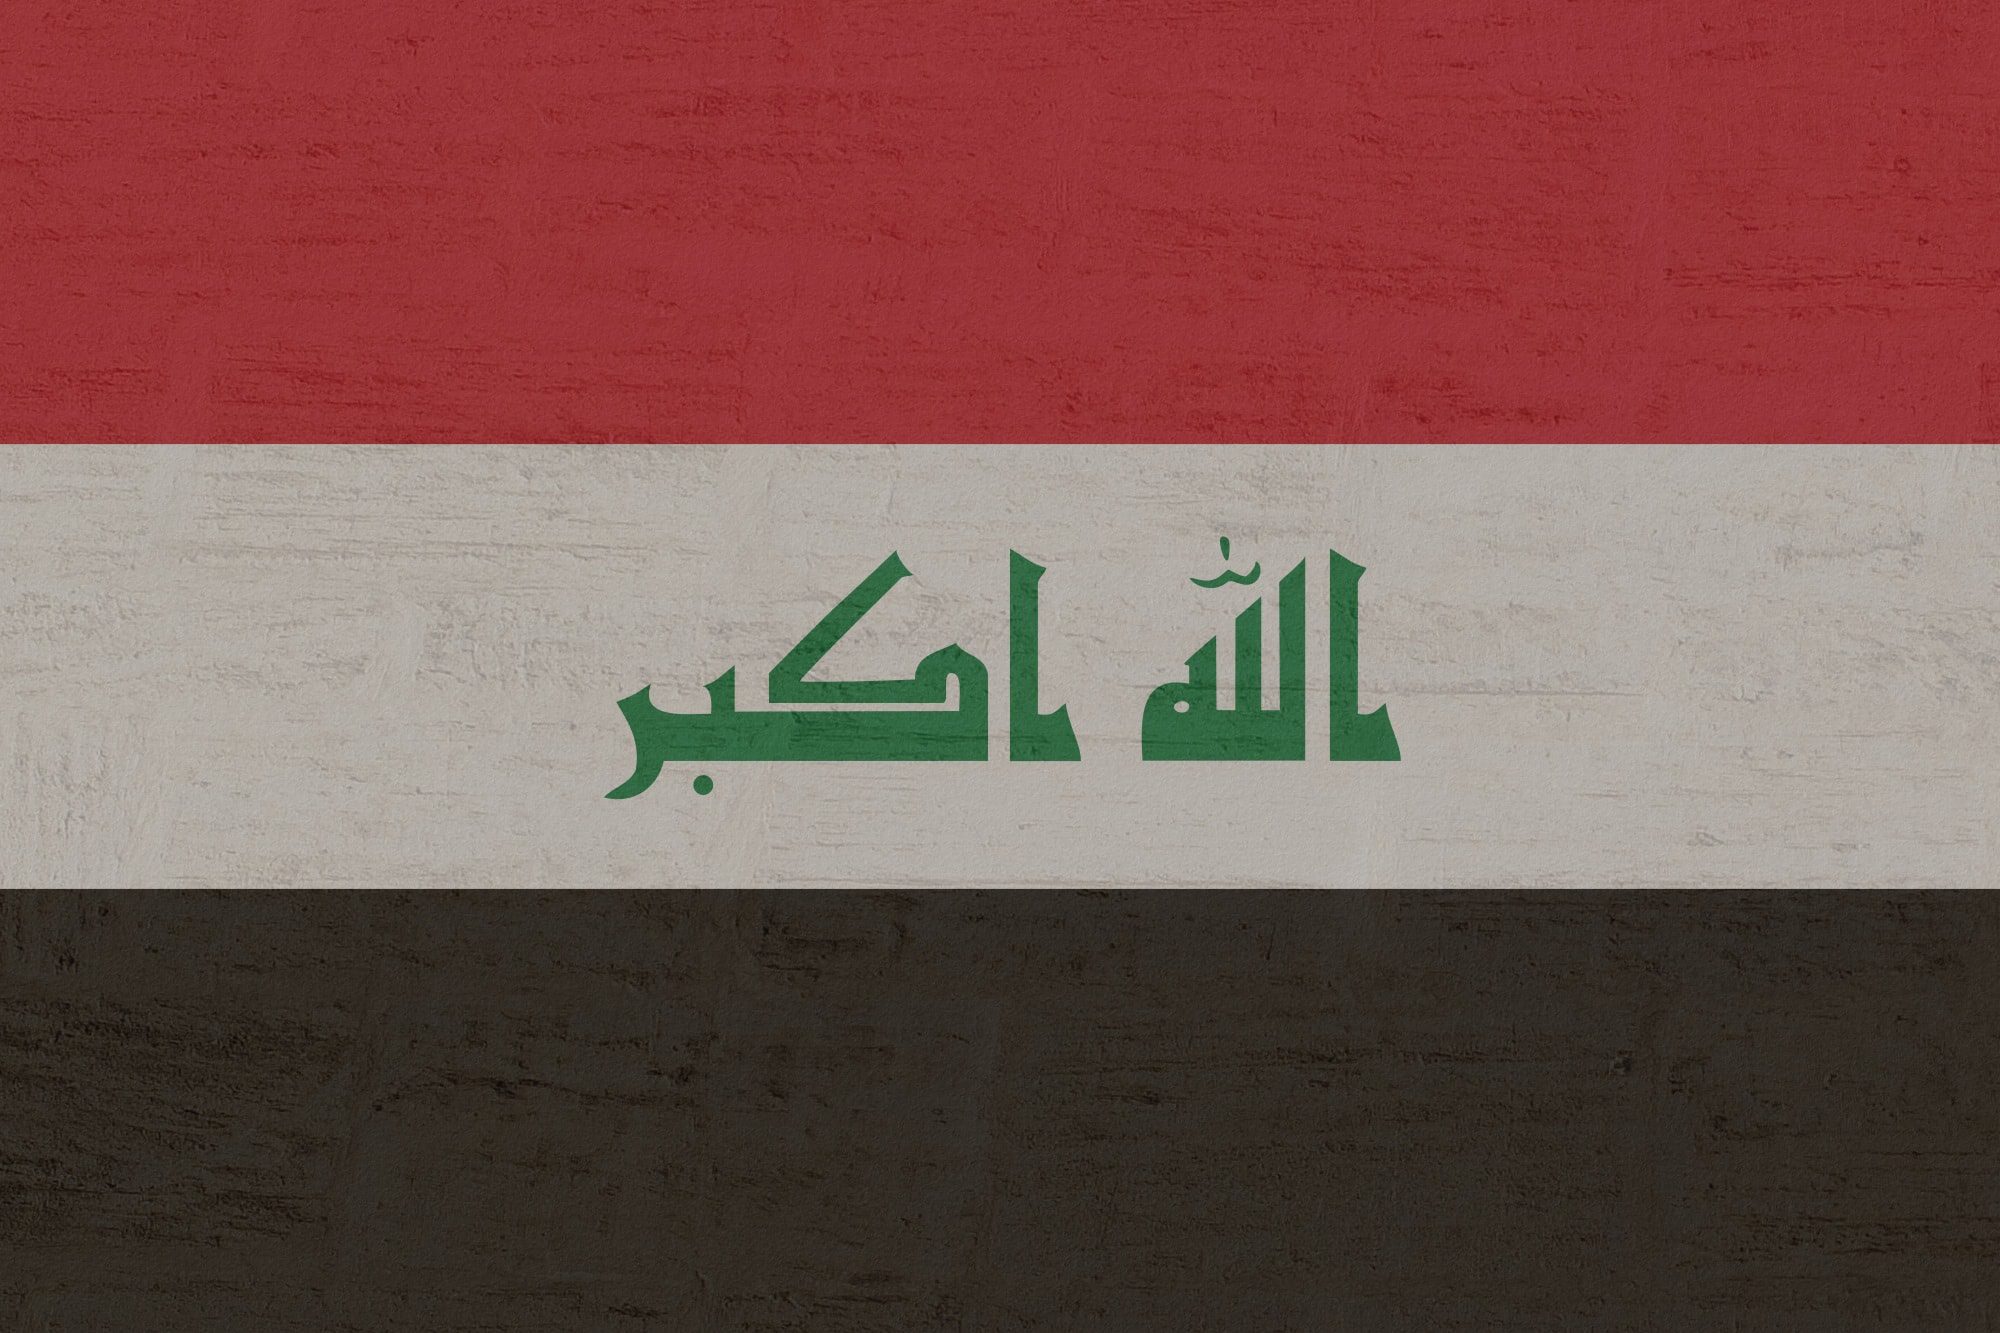 Le proteste in Iraq: uniti contro il settarismo (e contro Teheran)